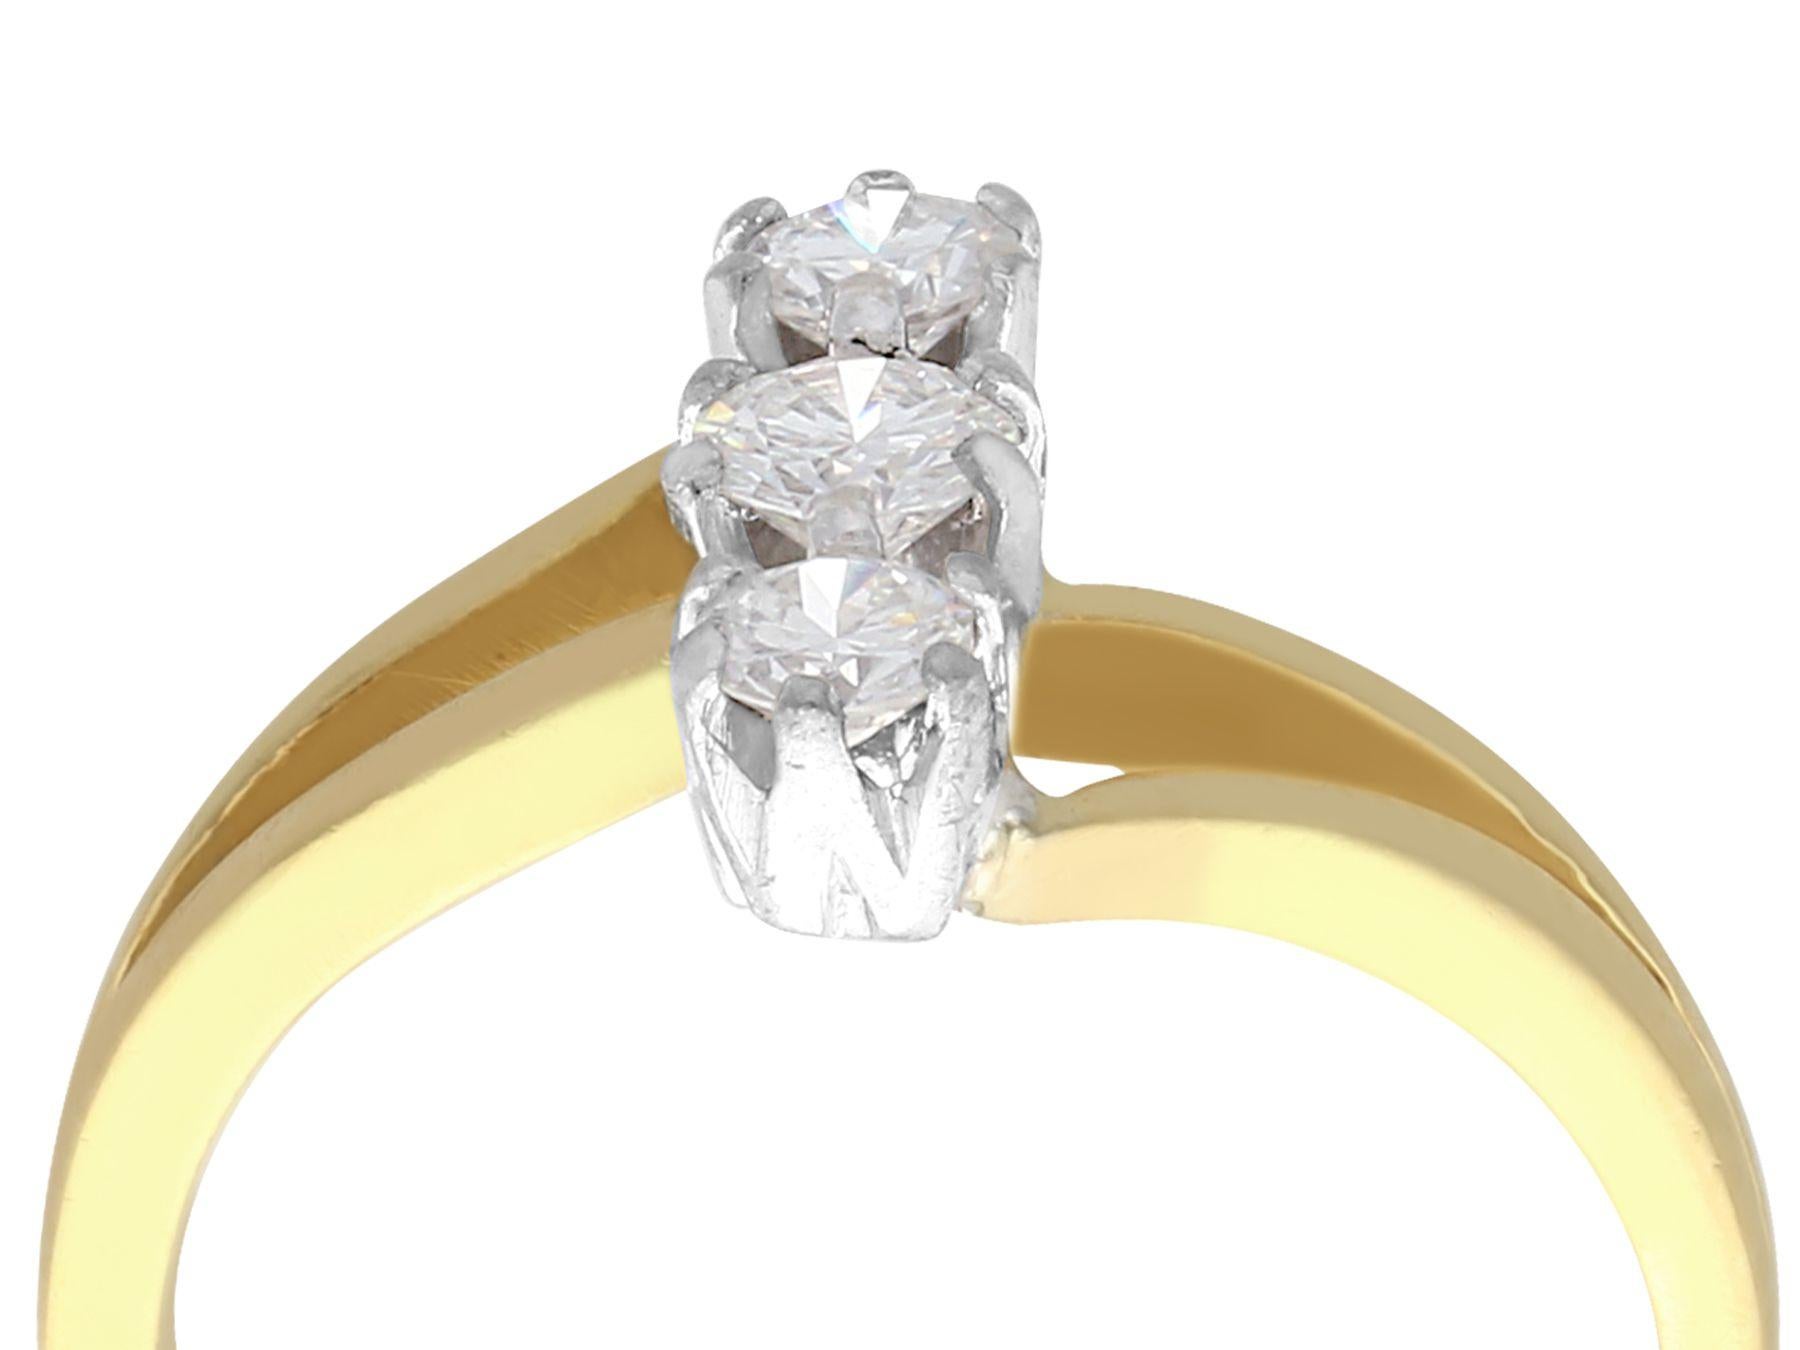 Ein feiner, zeitgenössischer Ring im Jugendstil mit 0,20 Karat Diamanten, 18 Karat Gelbgold und 18 Karat Weißgold; Teil unserer vielfältigen zeitgenössischen Schmuckkollektion.

Dieser feine, zeitgenössische Ring im Jugendstil mit drei Steinen ist